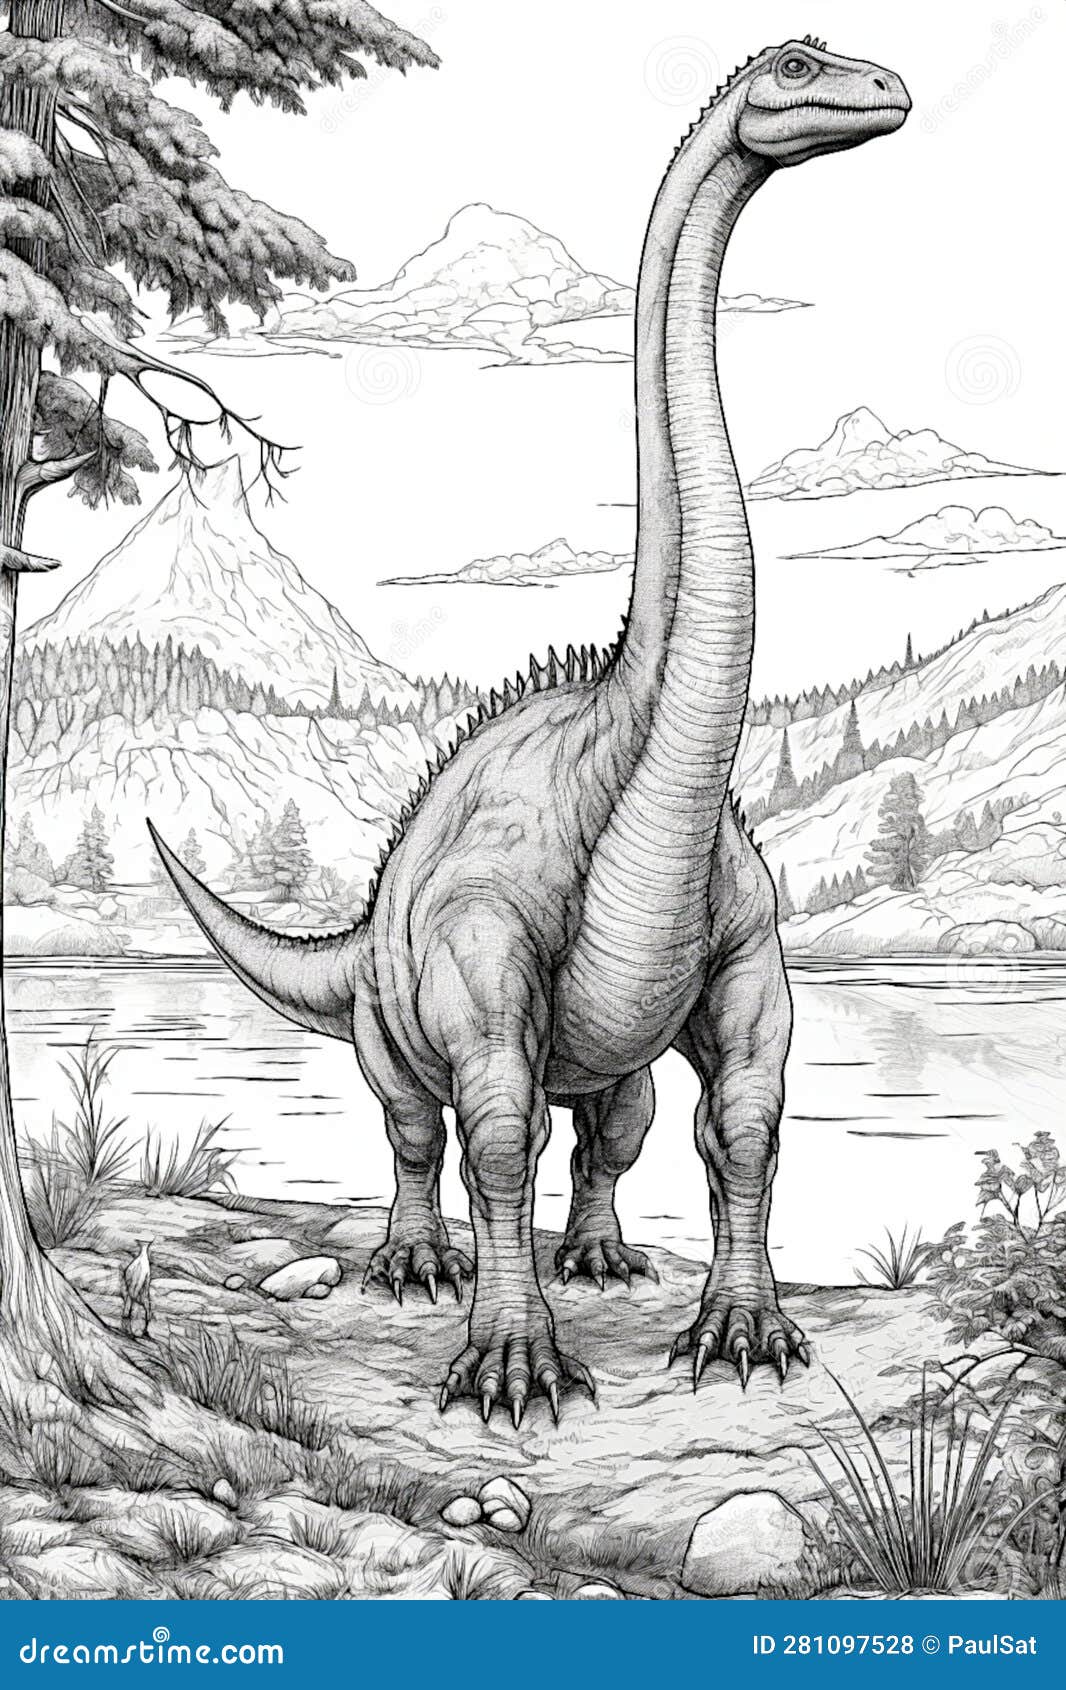 Inktober Day 13: Diplodocus by IllustratedMenagerie on DeviantArt